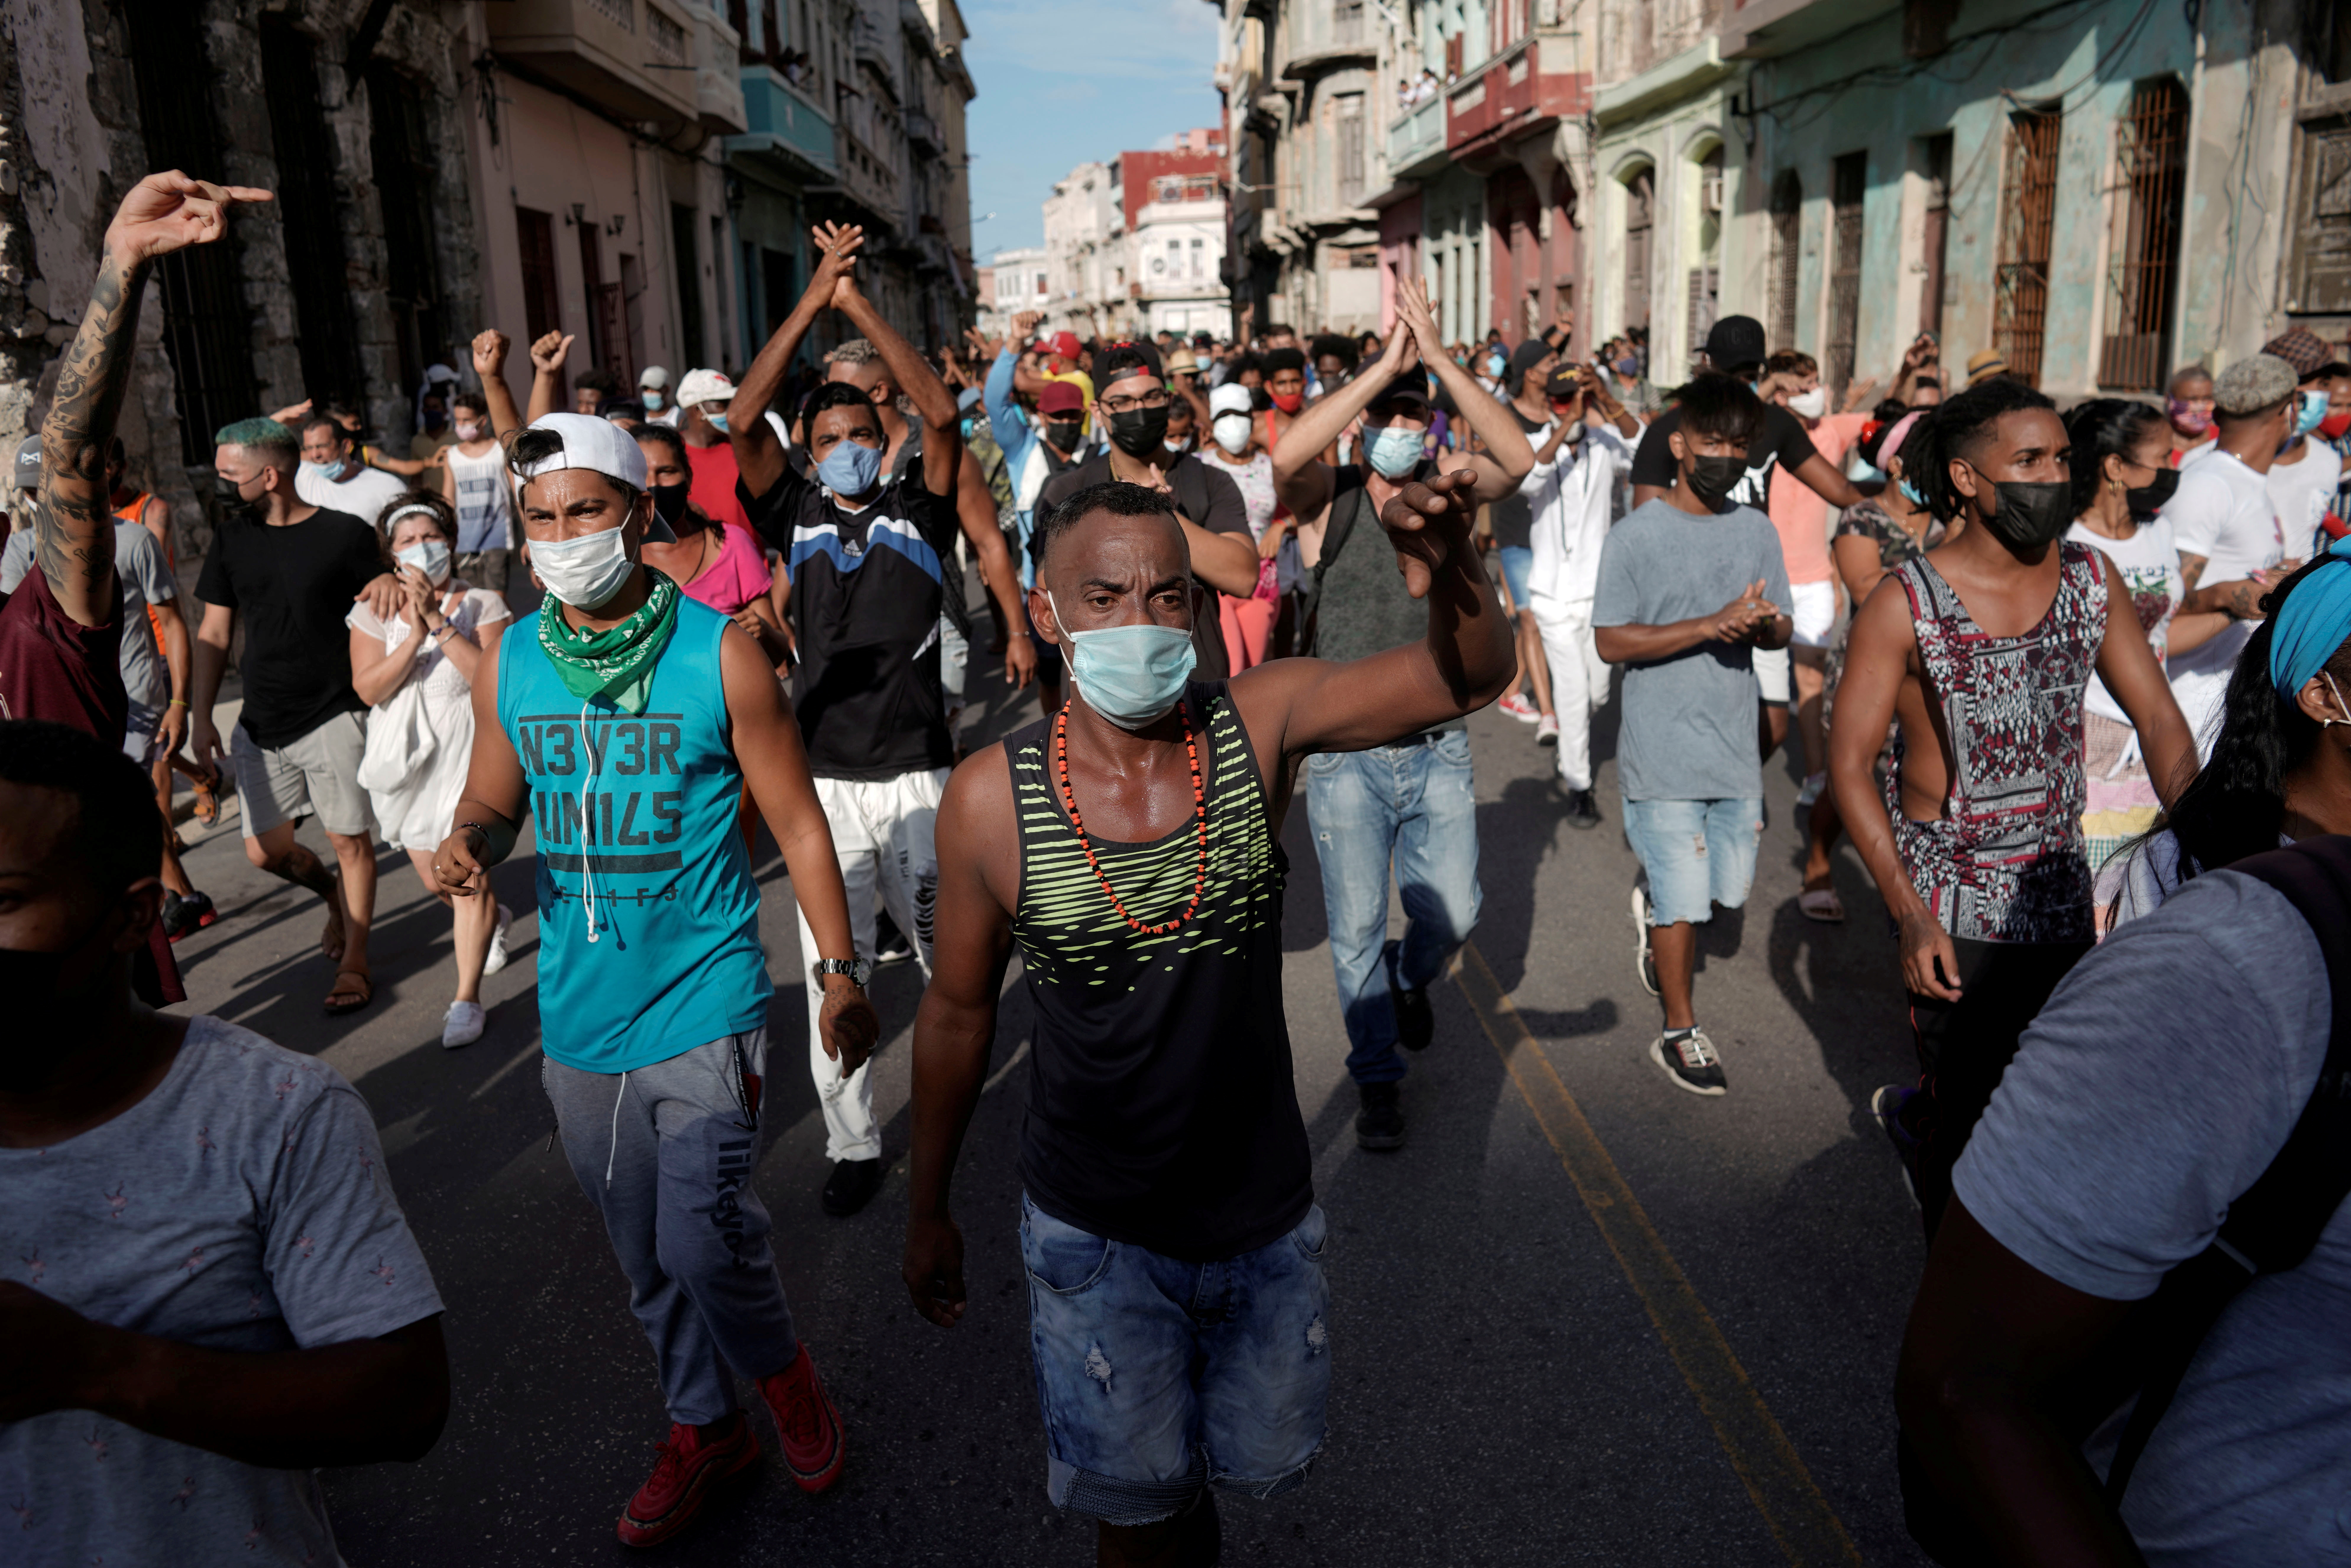 FOTO DE ARCHIVO: Los manifestantes gritan consignas contra la dictadura cubana durante una manifestación en La Habana, Cuba, el 11 de julio de 2021. REUTERS/Alexandre Meneghin/File Photo